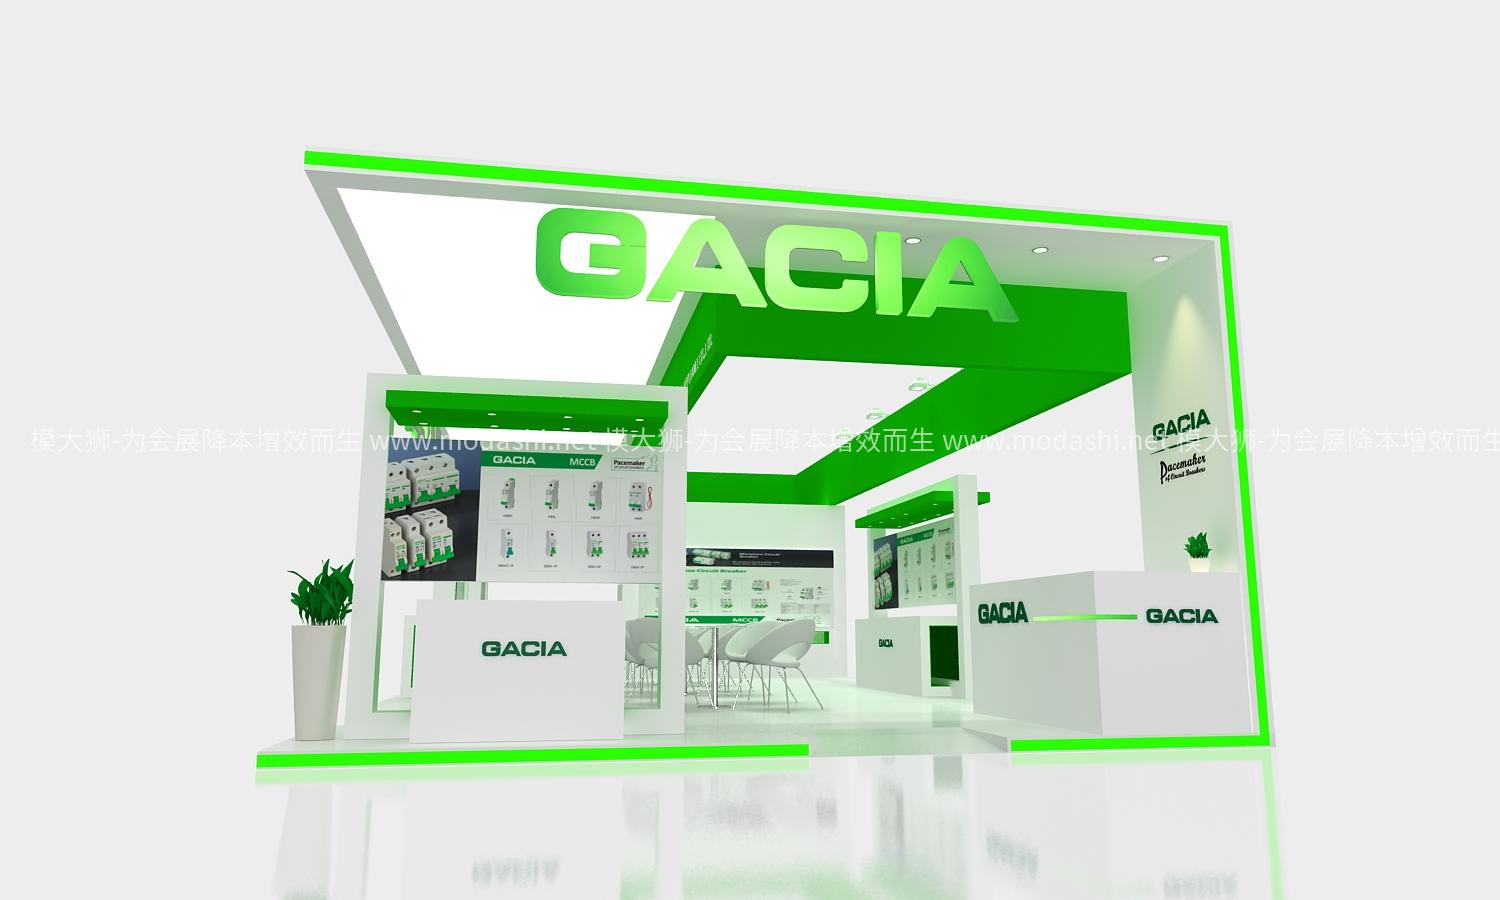 GACIA12x6MAX展台模型